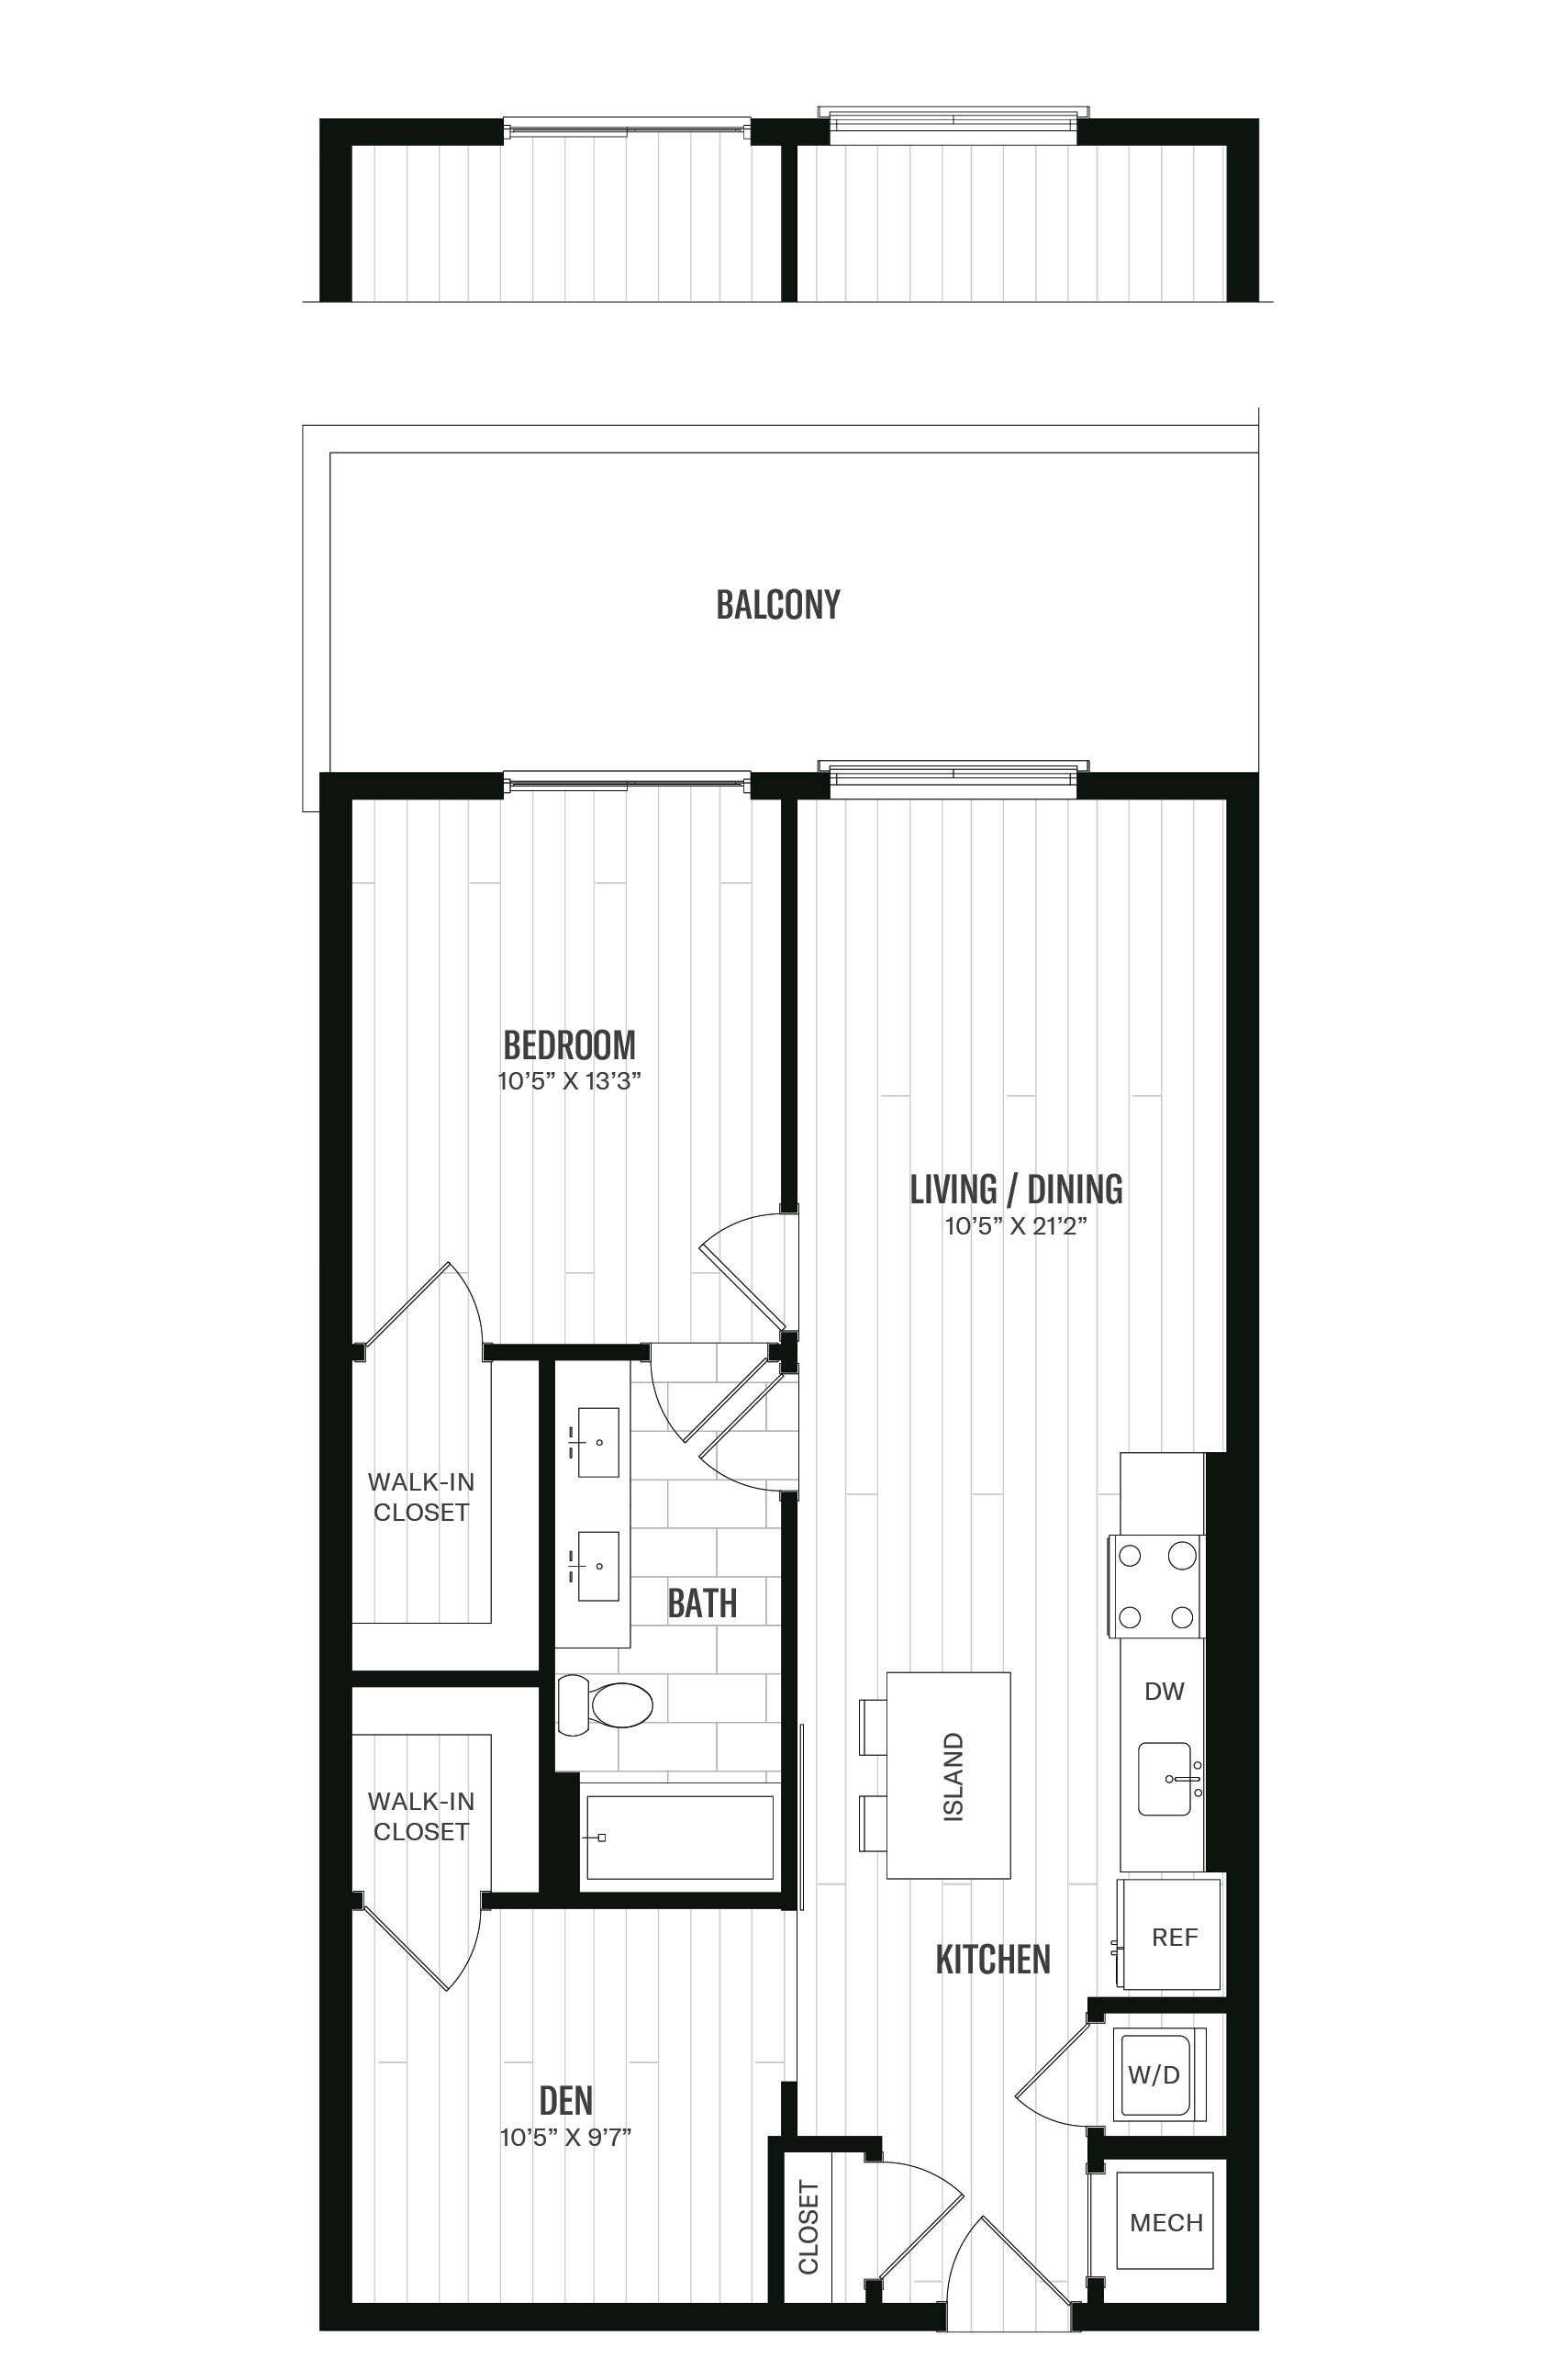 Floorplan image of unit 321